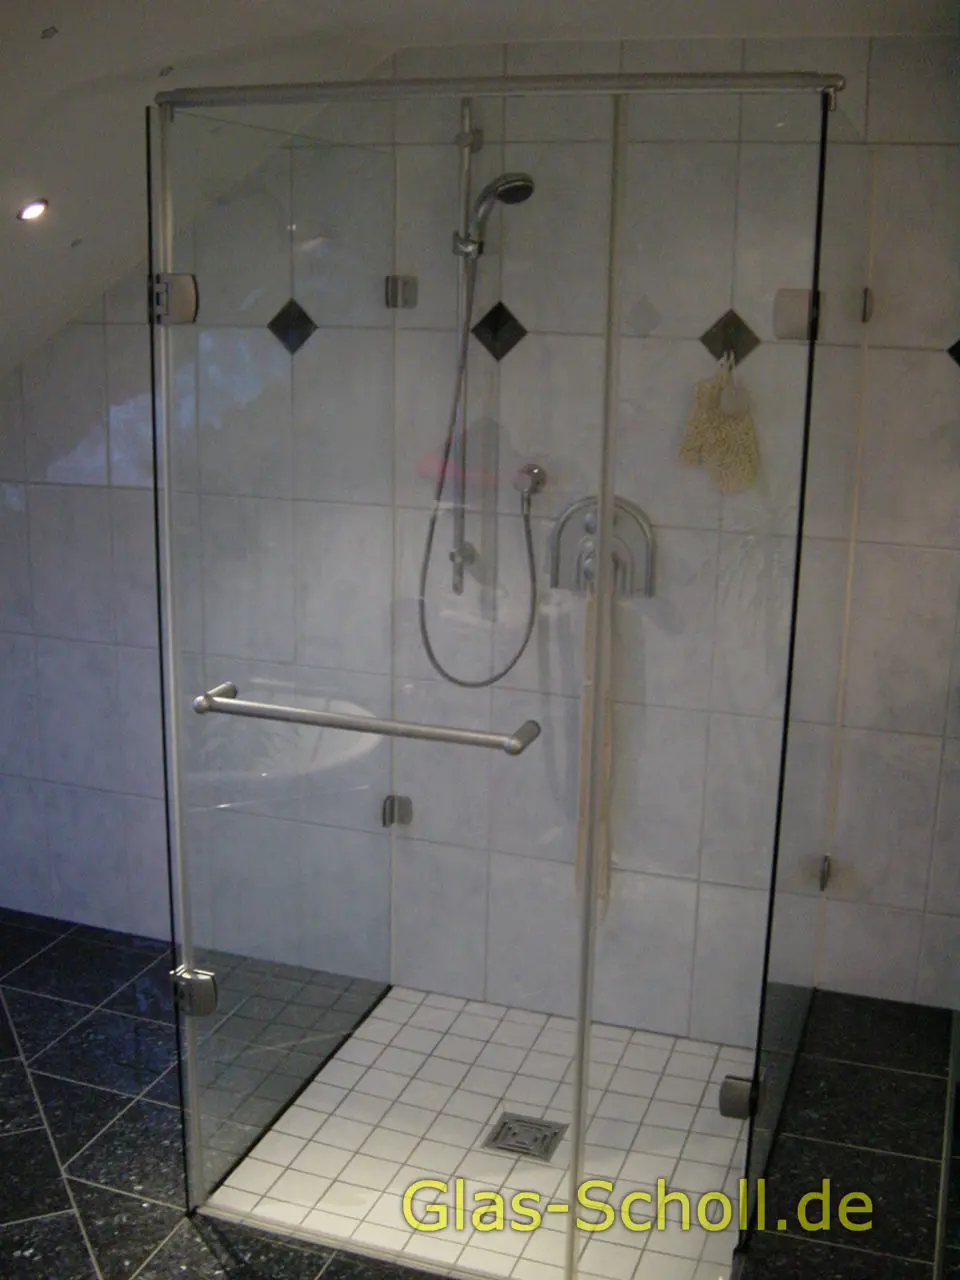 Kaste-U-Dusche von Glas Scholl